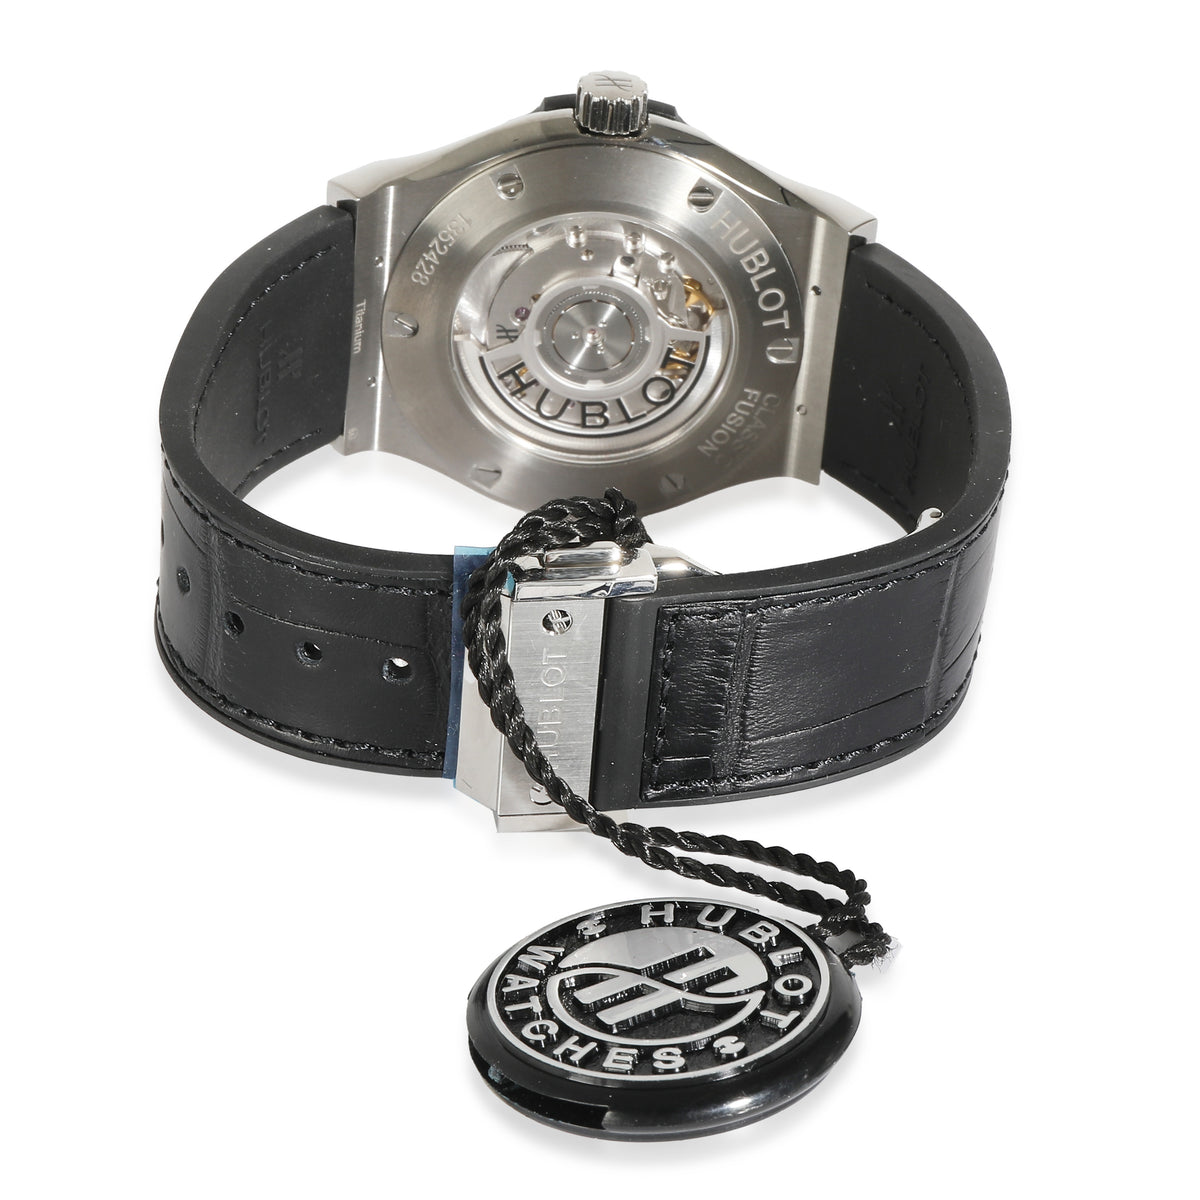 Classic Fusion 542.NX.1171.LR Men's Watch in  Titanium